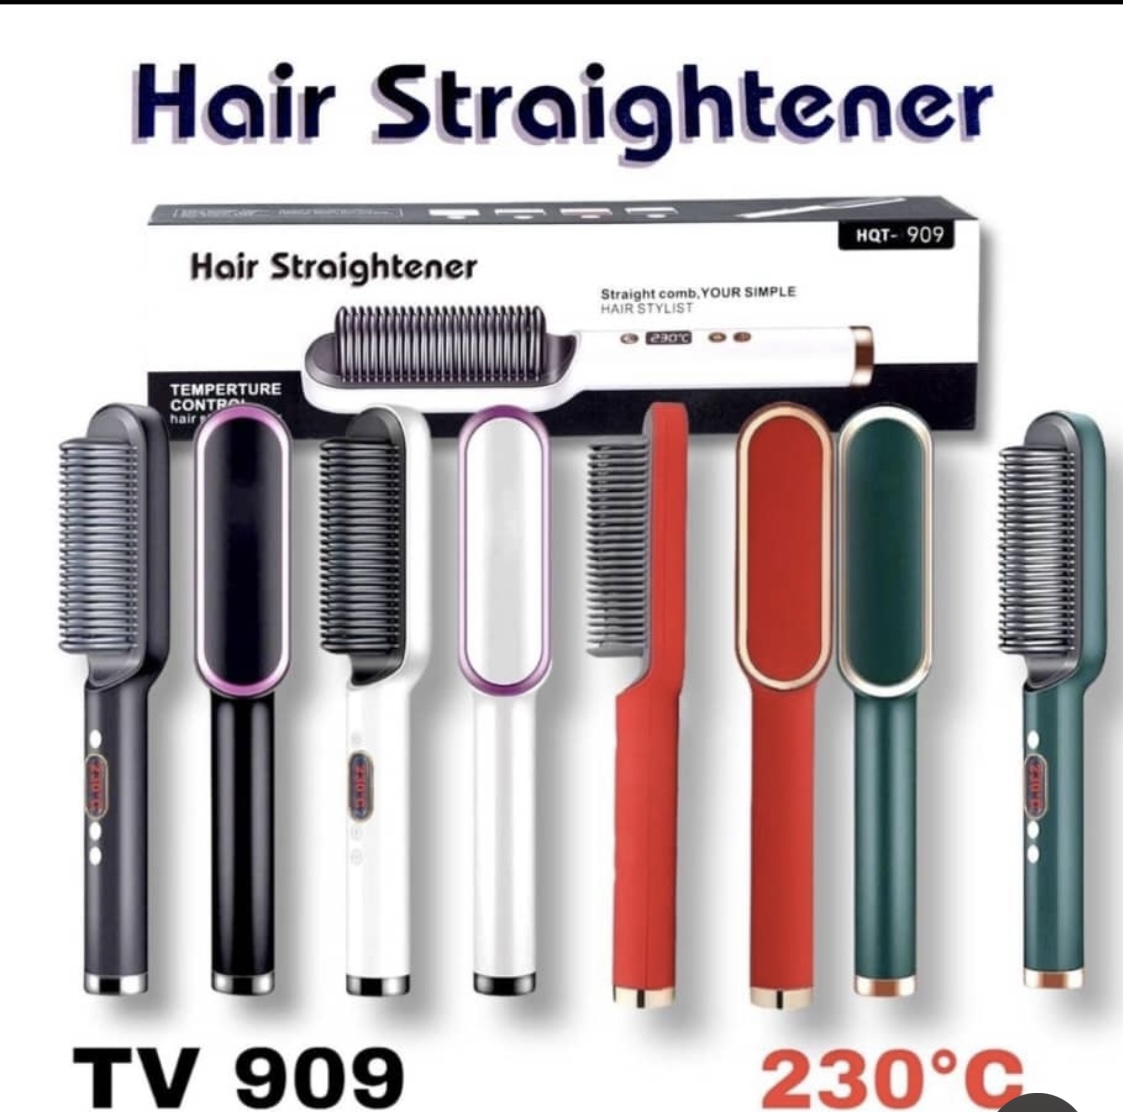 Hair stroightener